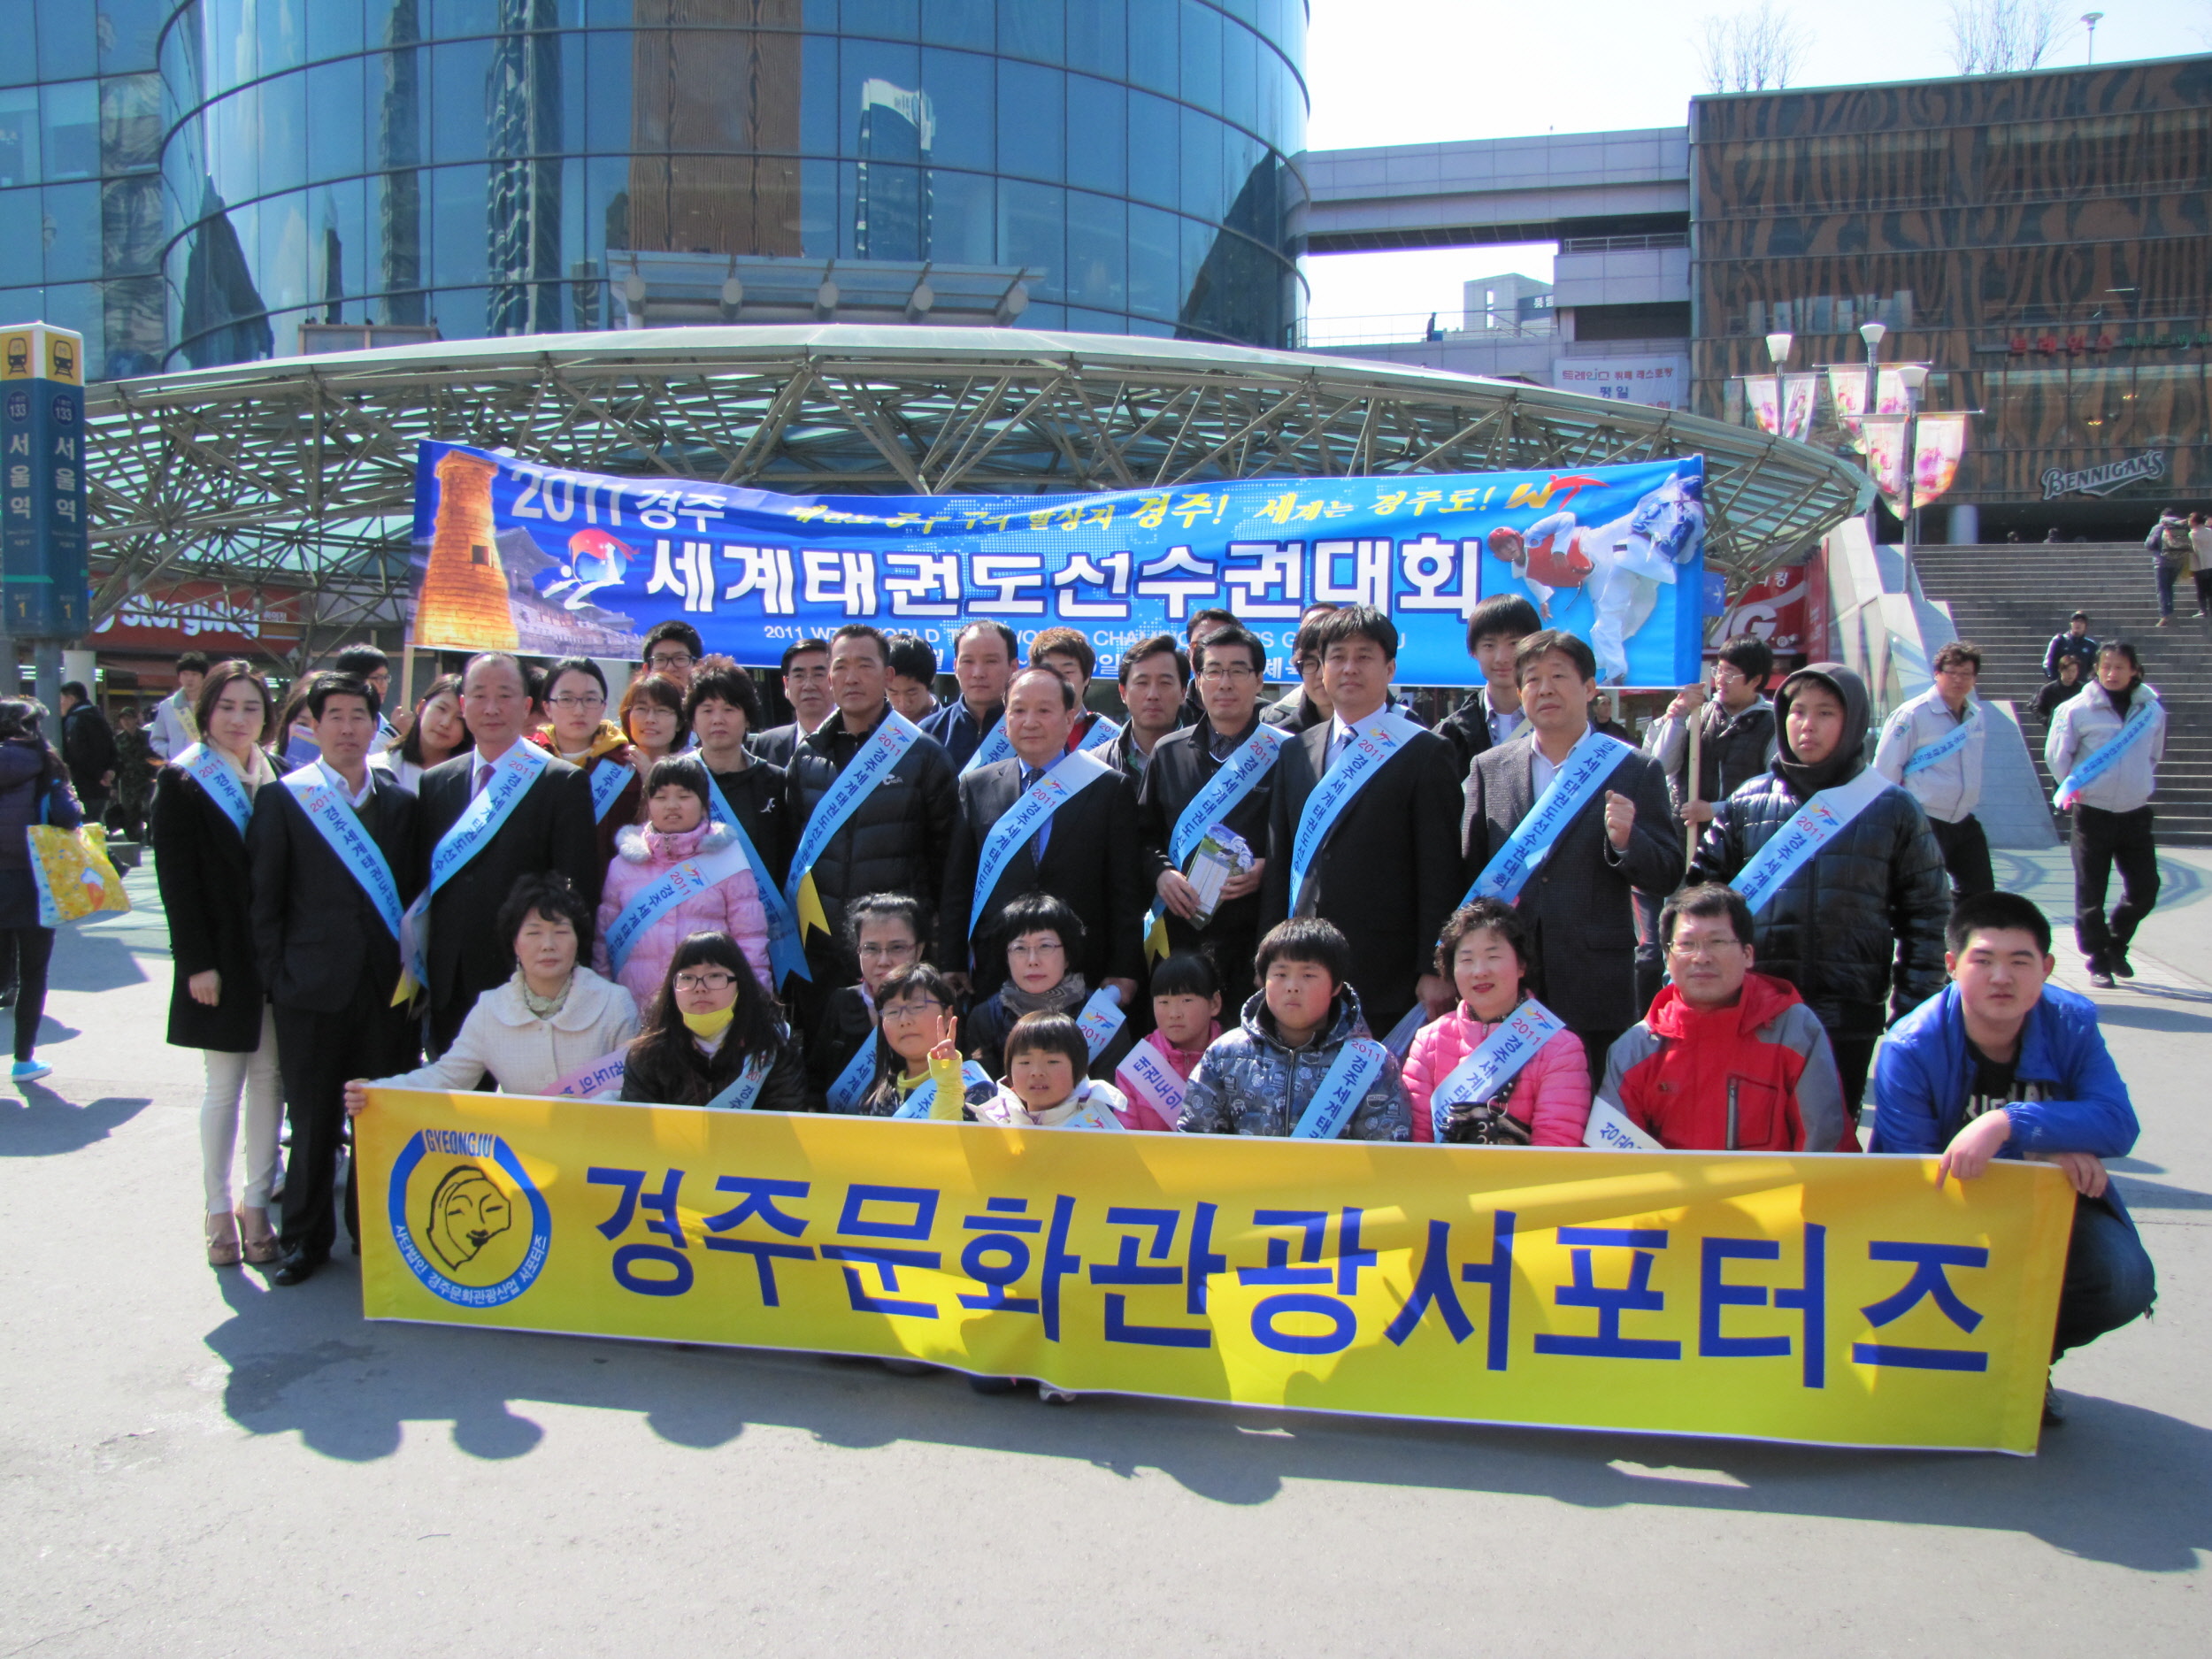 2011 경주 WTF세계태권도선수권대회 성공적 개최를 위한 홍보박차